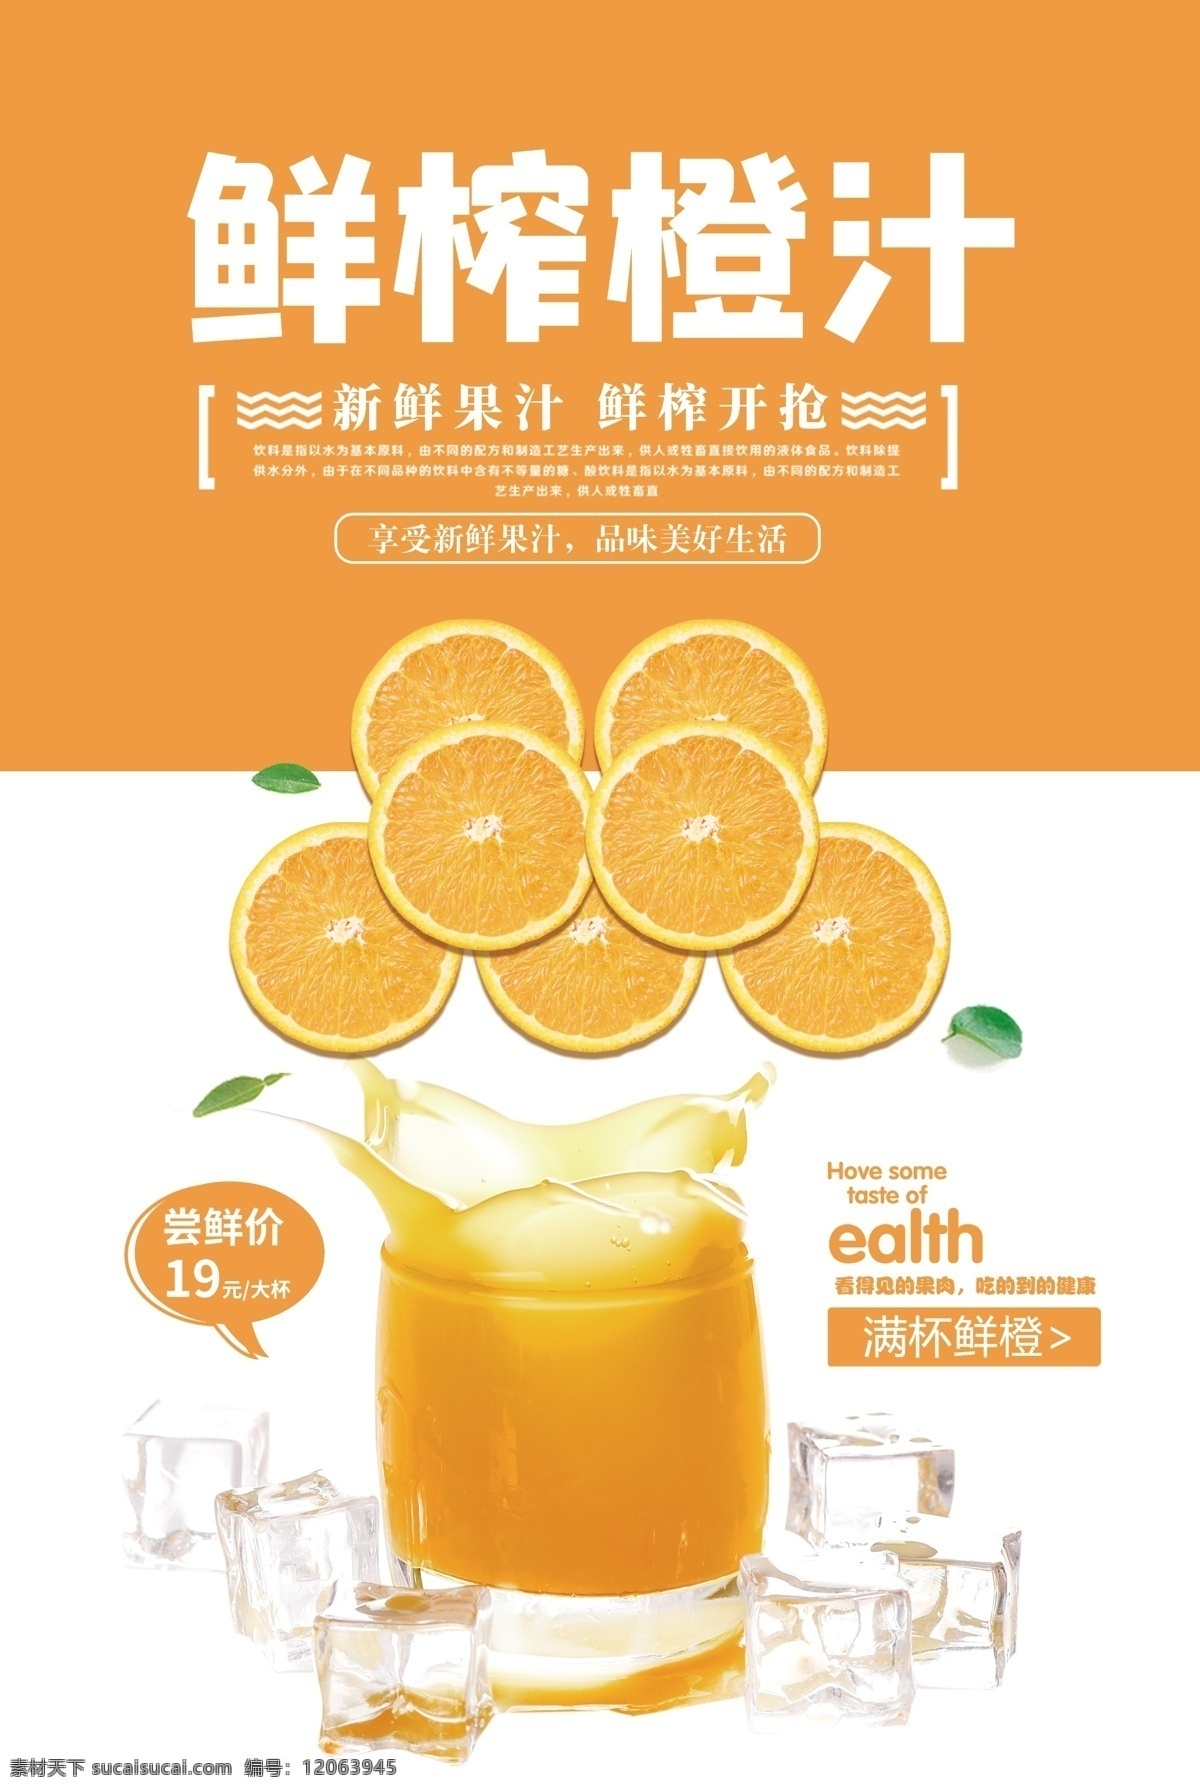 鲜榨橙汁图片 果汁 鲜榨橙汁 饮料 水果 果汁素材